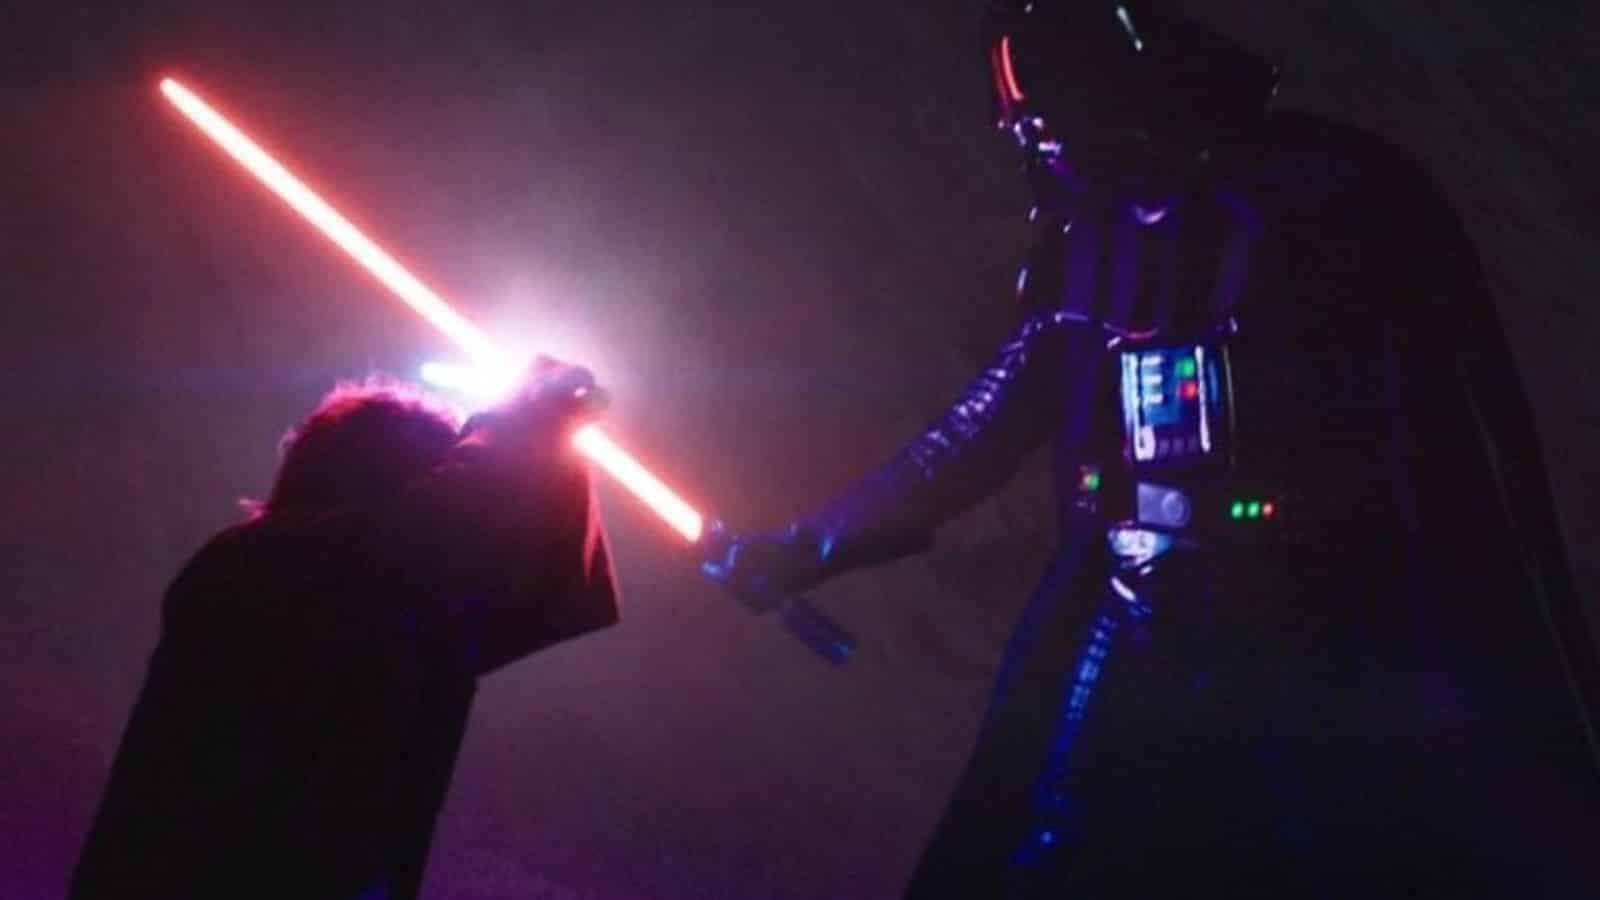 An image of Obi-Wan Kenobi and Darth Vader